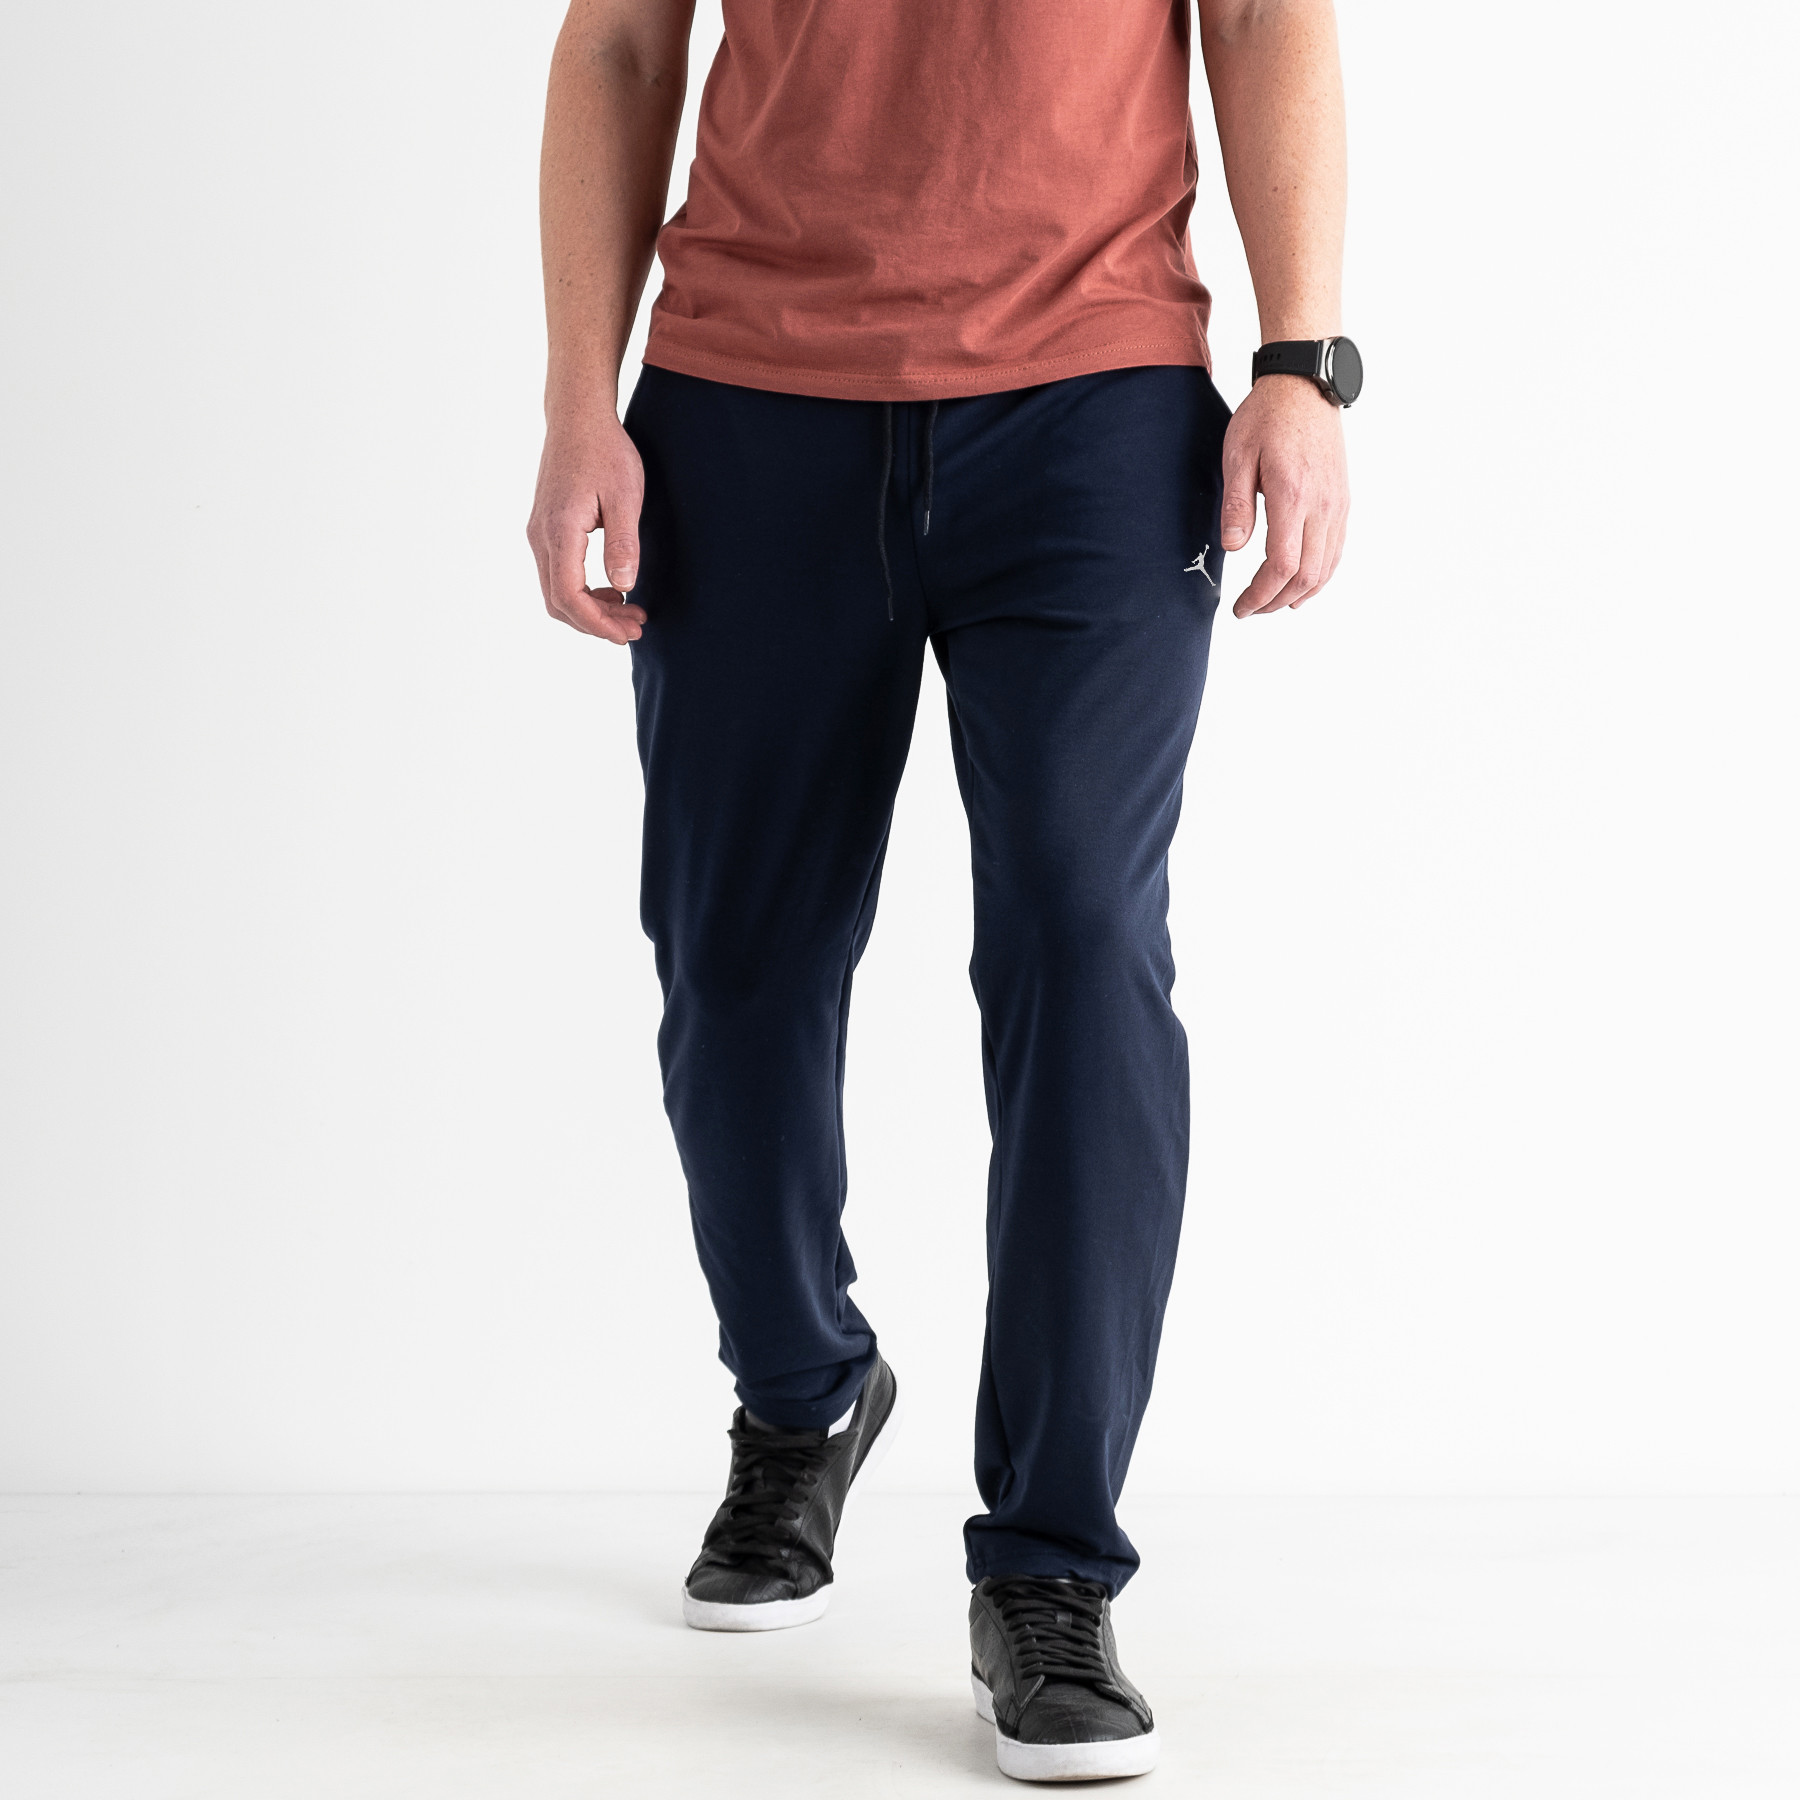 1672-3 СИНИЙ Yola спортивные штаны мужские из двунитки ( 4 ед. размеры: M.L.XL.XXL)